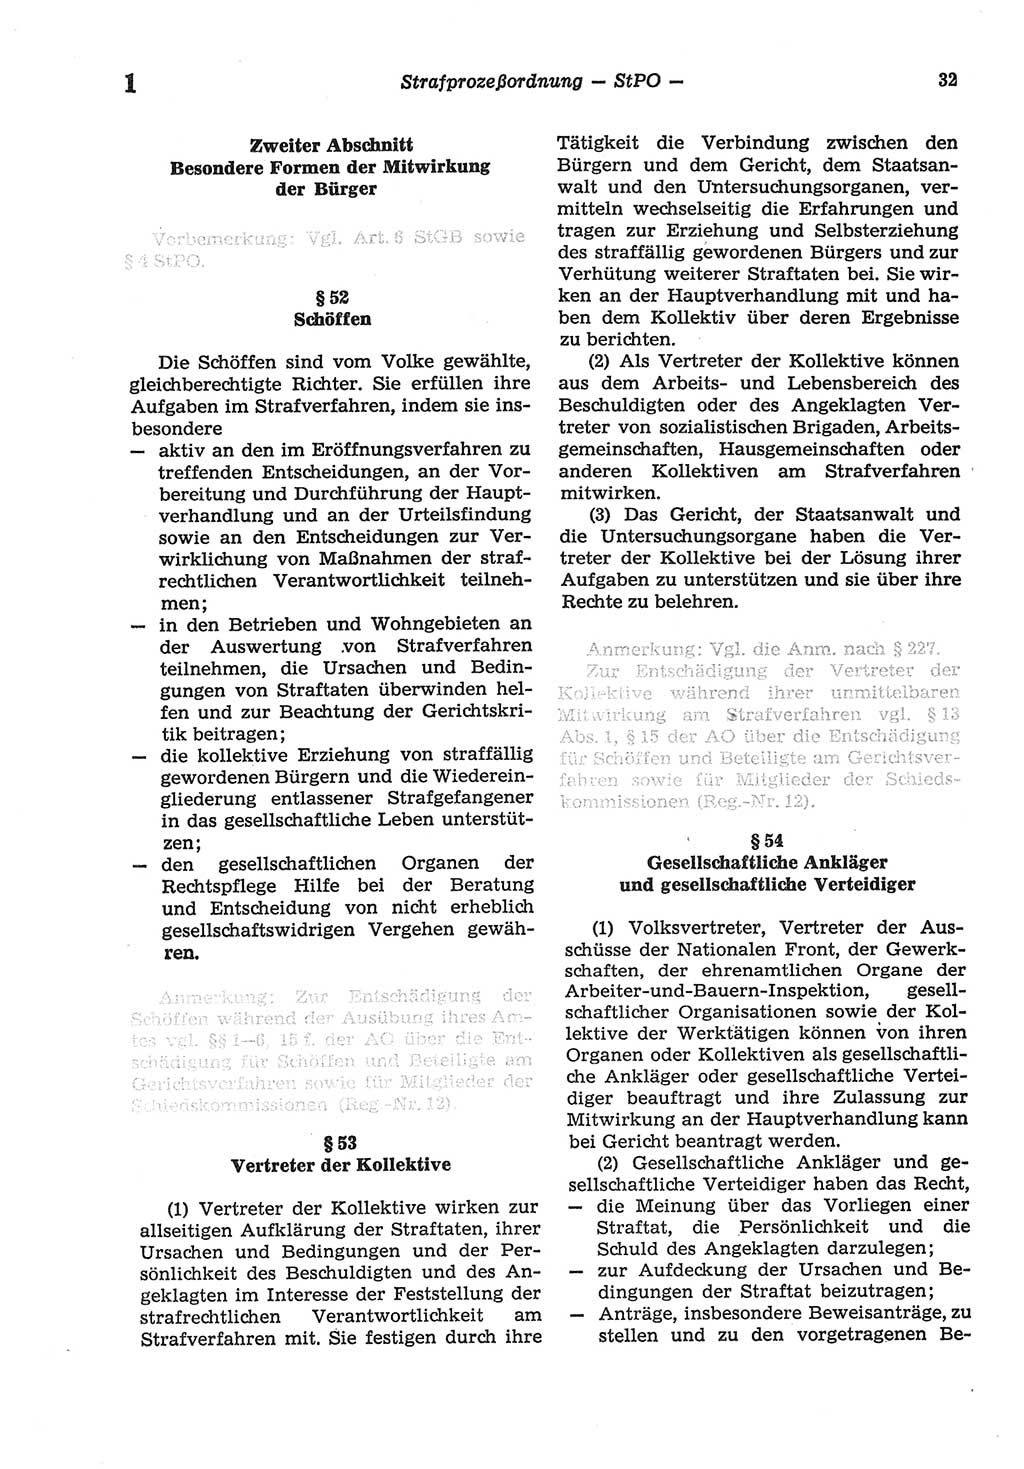 Strafprozeßordnung (StPO) der Deutschen Demokratischen Republik (DDR) sowie angrenzende Gesetze und Bestimmungen 1977, Seite 32 (StPO DDR Ges. Best. 1977, S. 32)